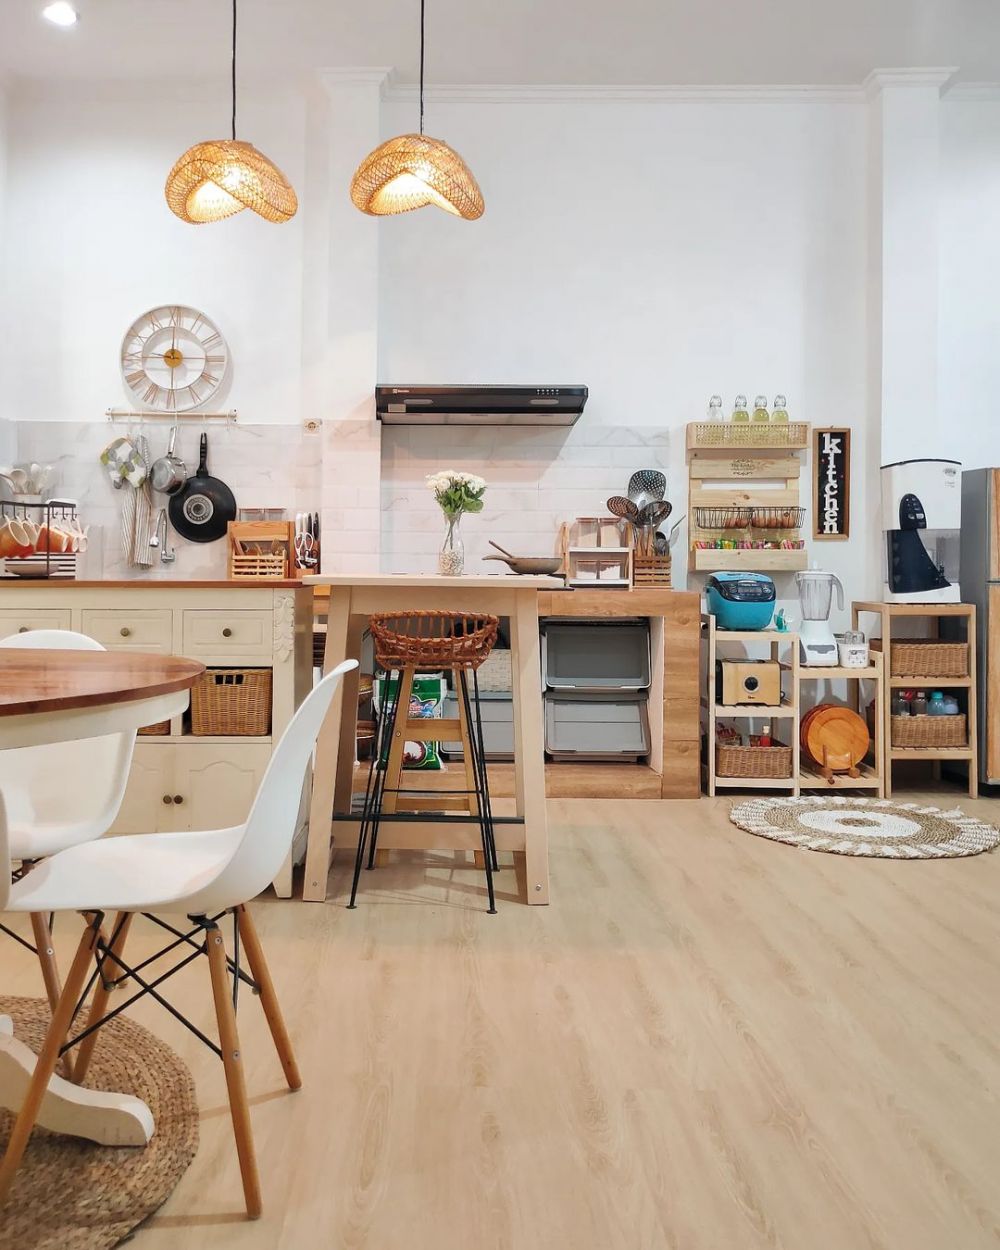 11 Potret dapur tanpa kitchen set ini estetik dan mewah pol, bisa jadi ide dekor ibu-ibu banyak barang